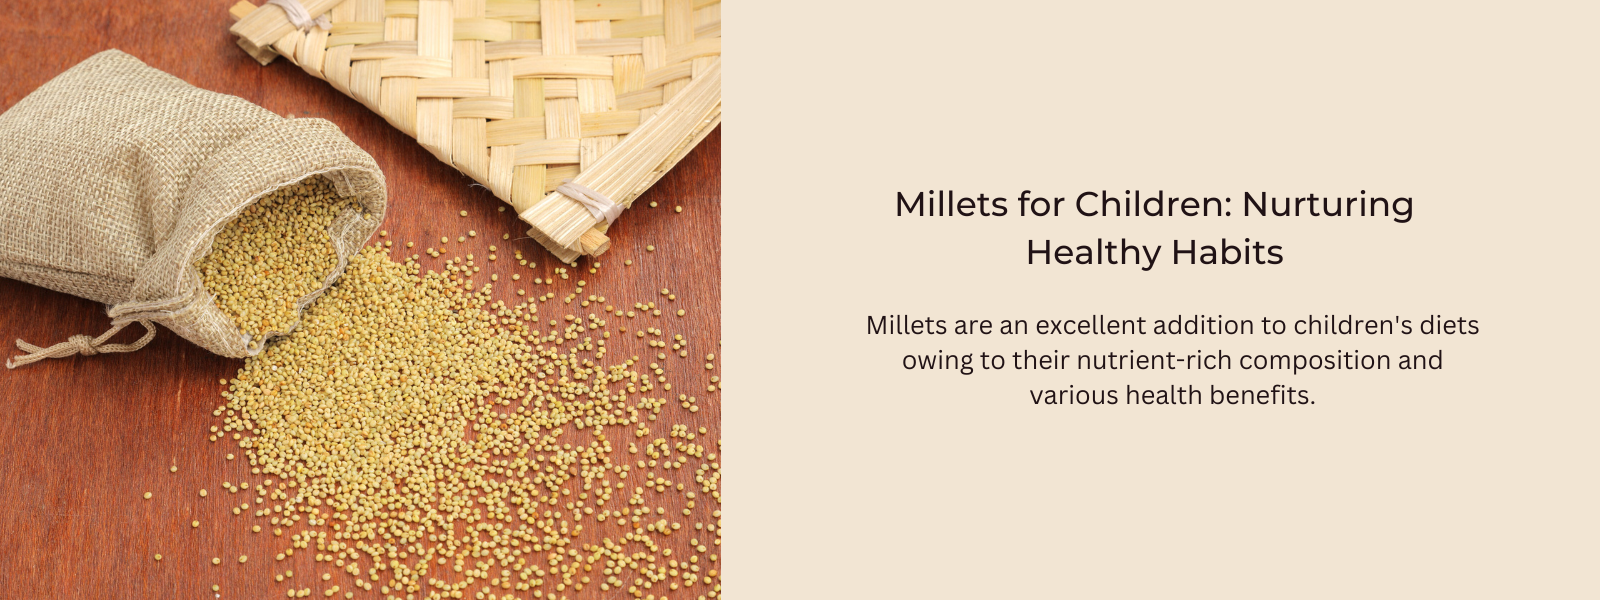 Millets for Children: Nurturing Healthy Habits